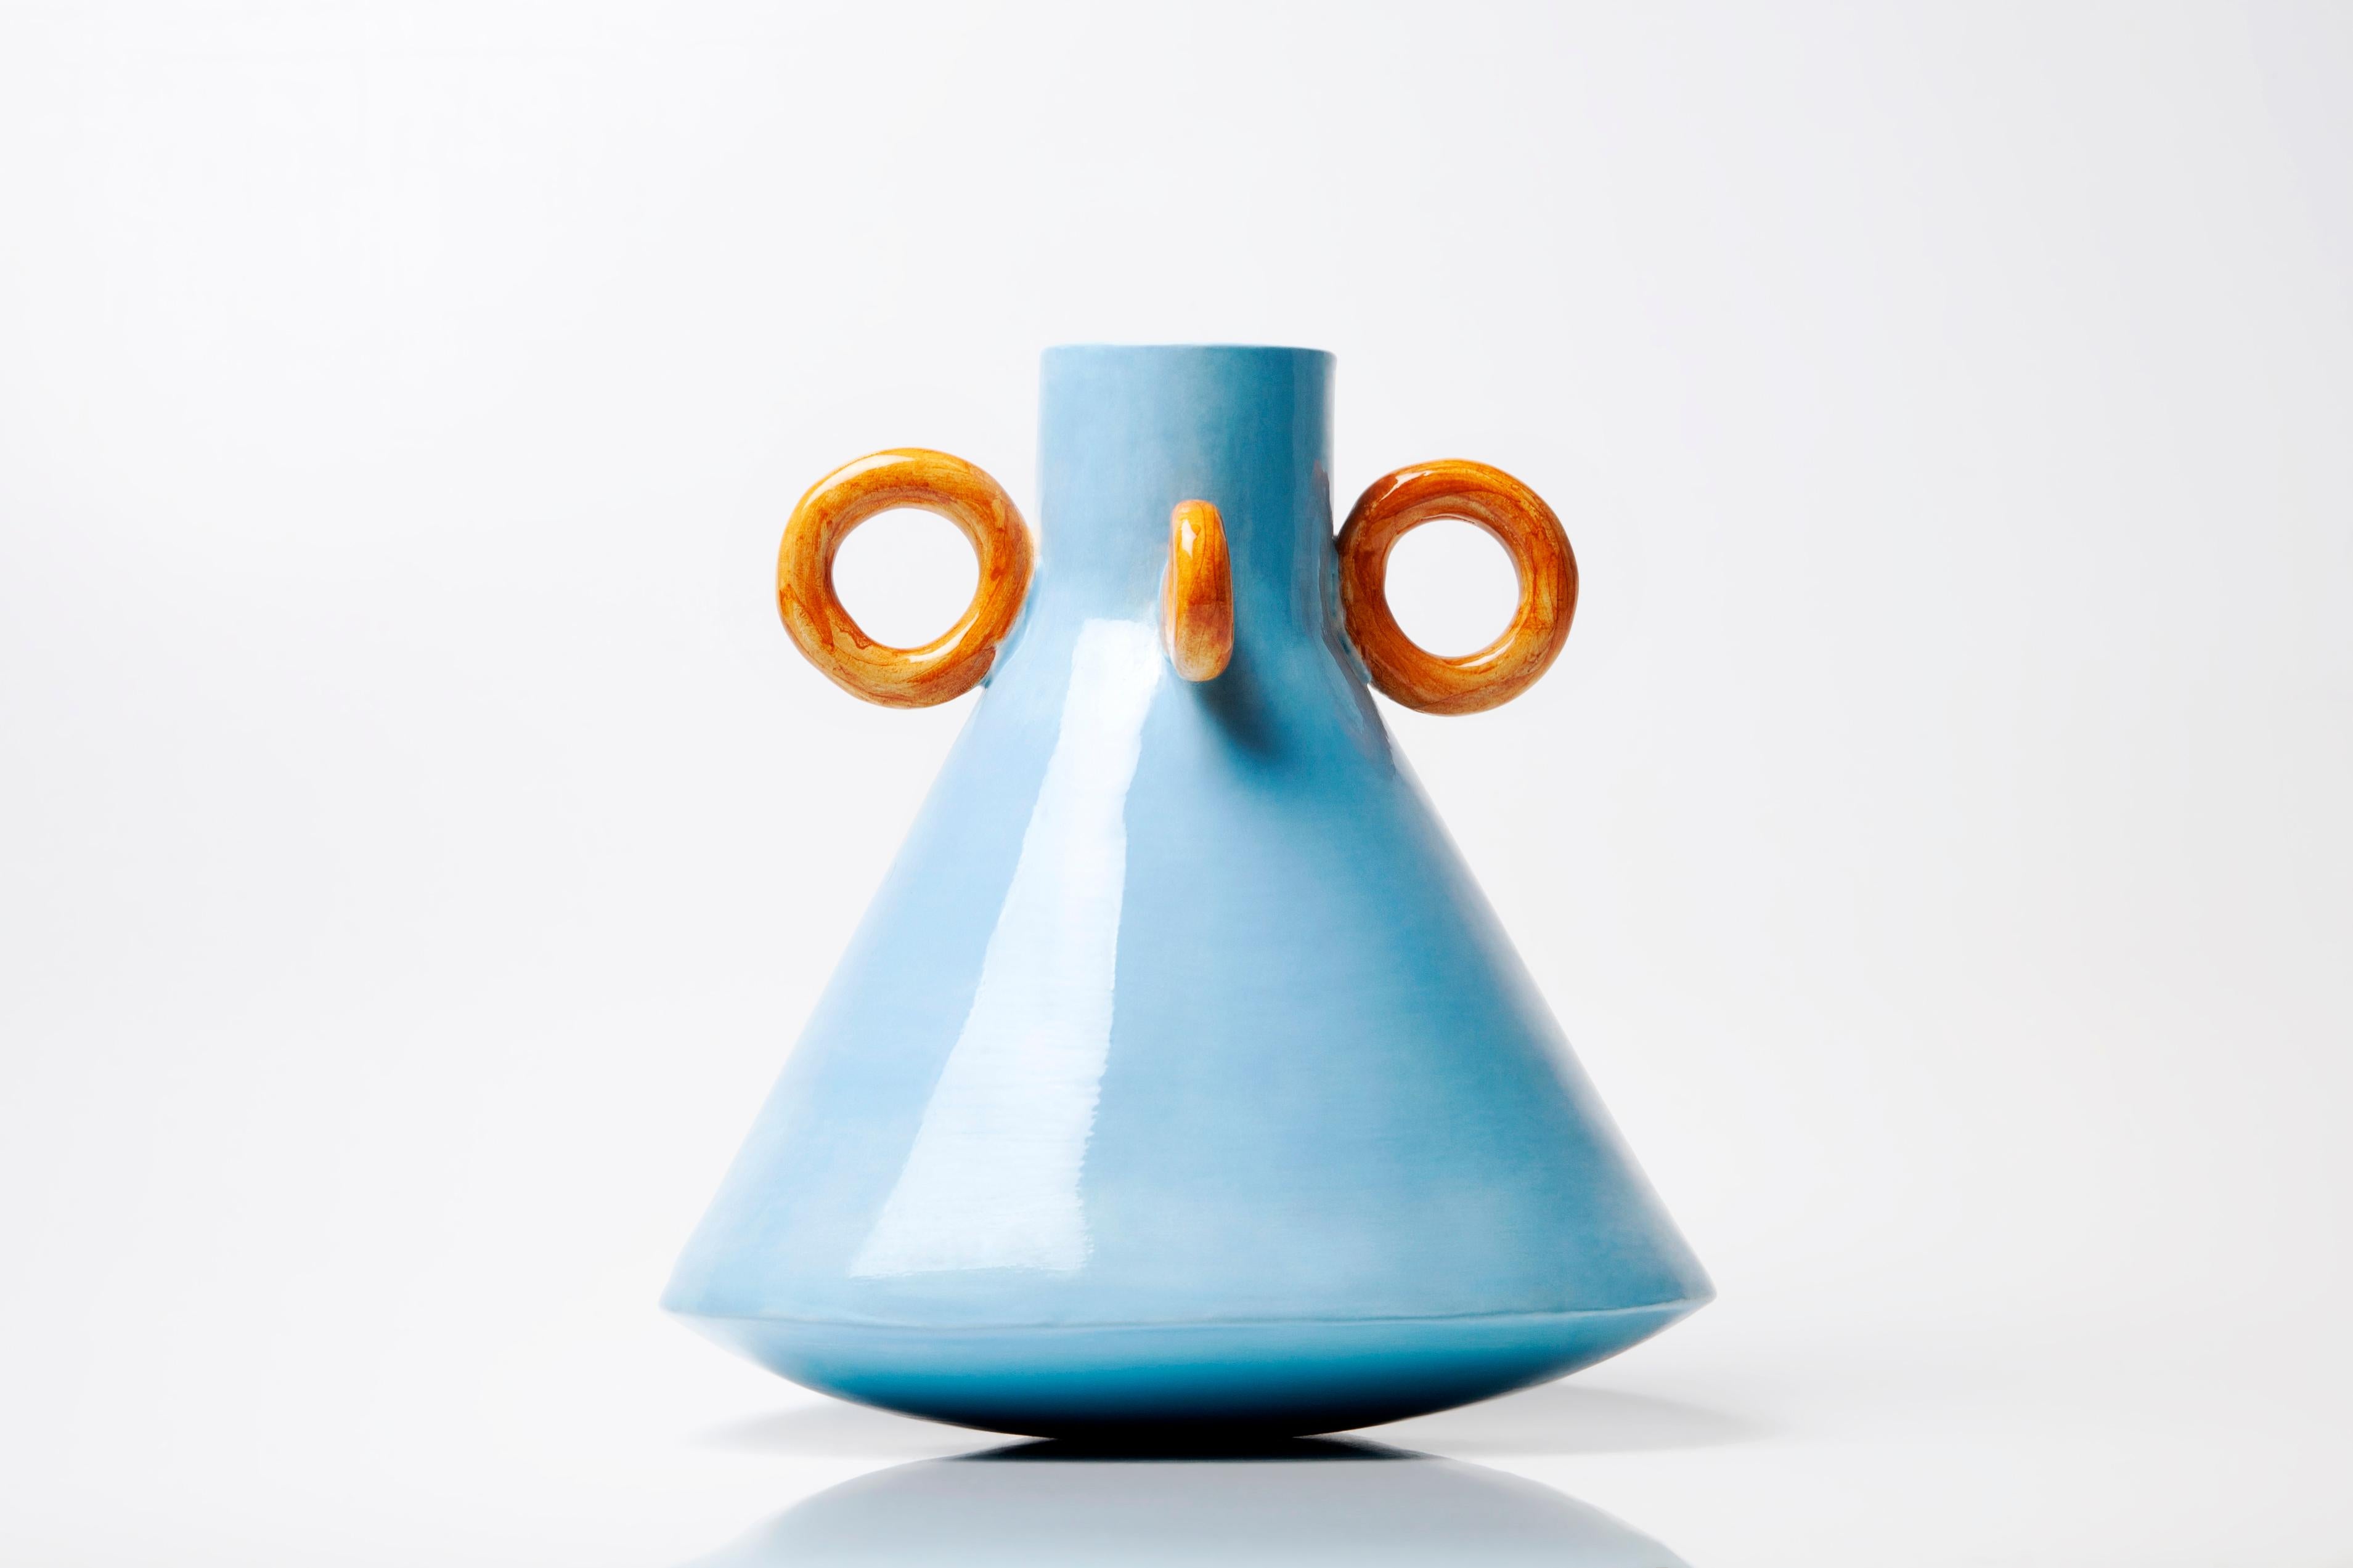 Vase Ramina d'Arianna De Luca
Dimensions : hauteur 20 x diamètre 20 cm 
Matériaux : céramique 

Ramina fait partie de la série Folcloristica. Une collection inspirée par l'ambiance et le mode de vie des villages du sud de l'Italie. Le vase revisite